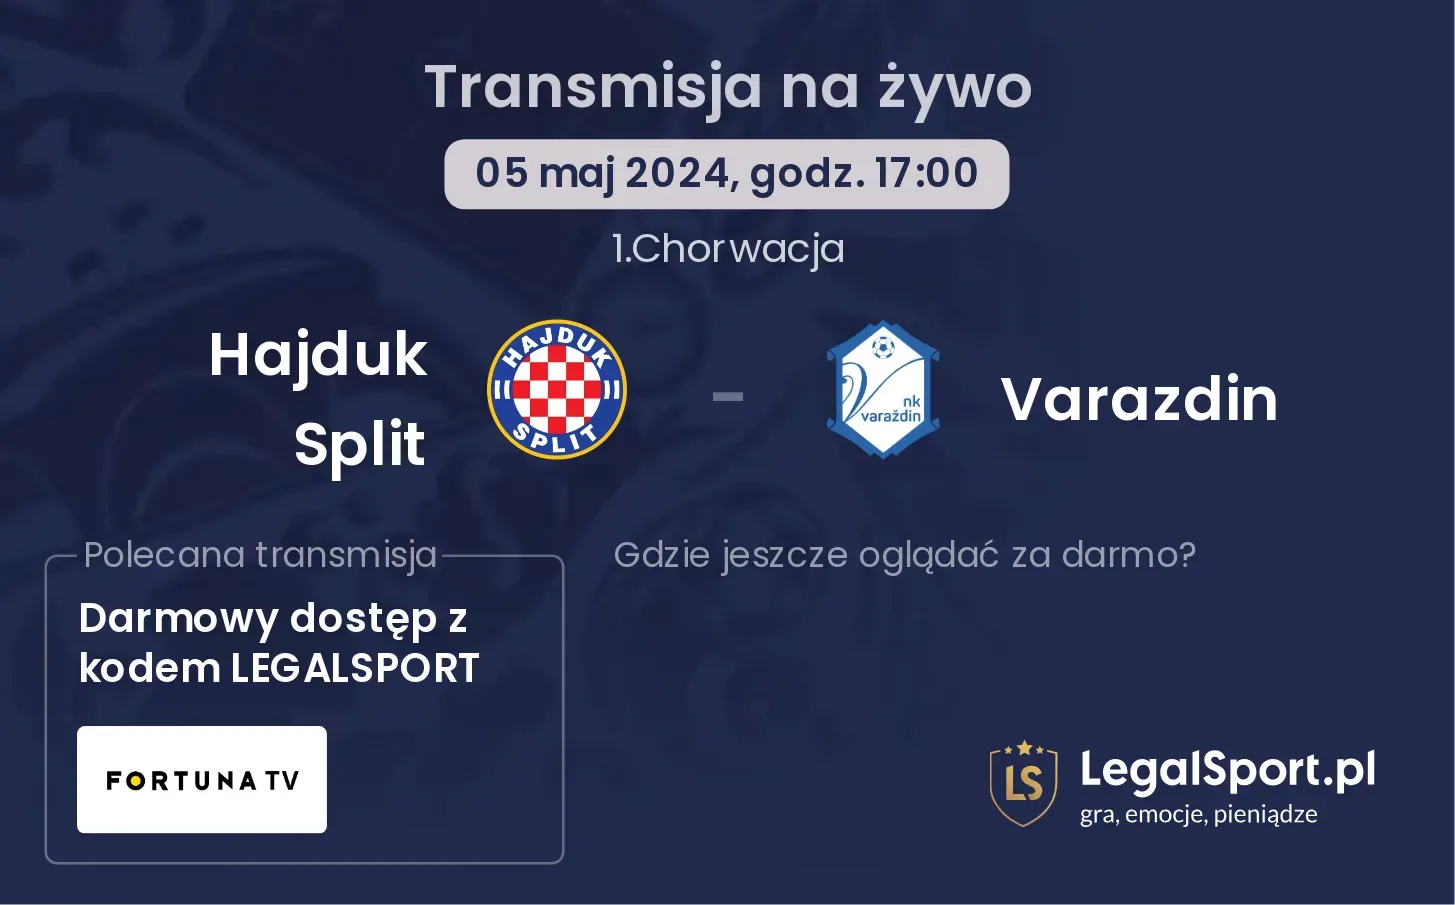 Hajduk Split - Varazdin transmisja na żywo